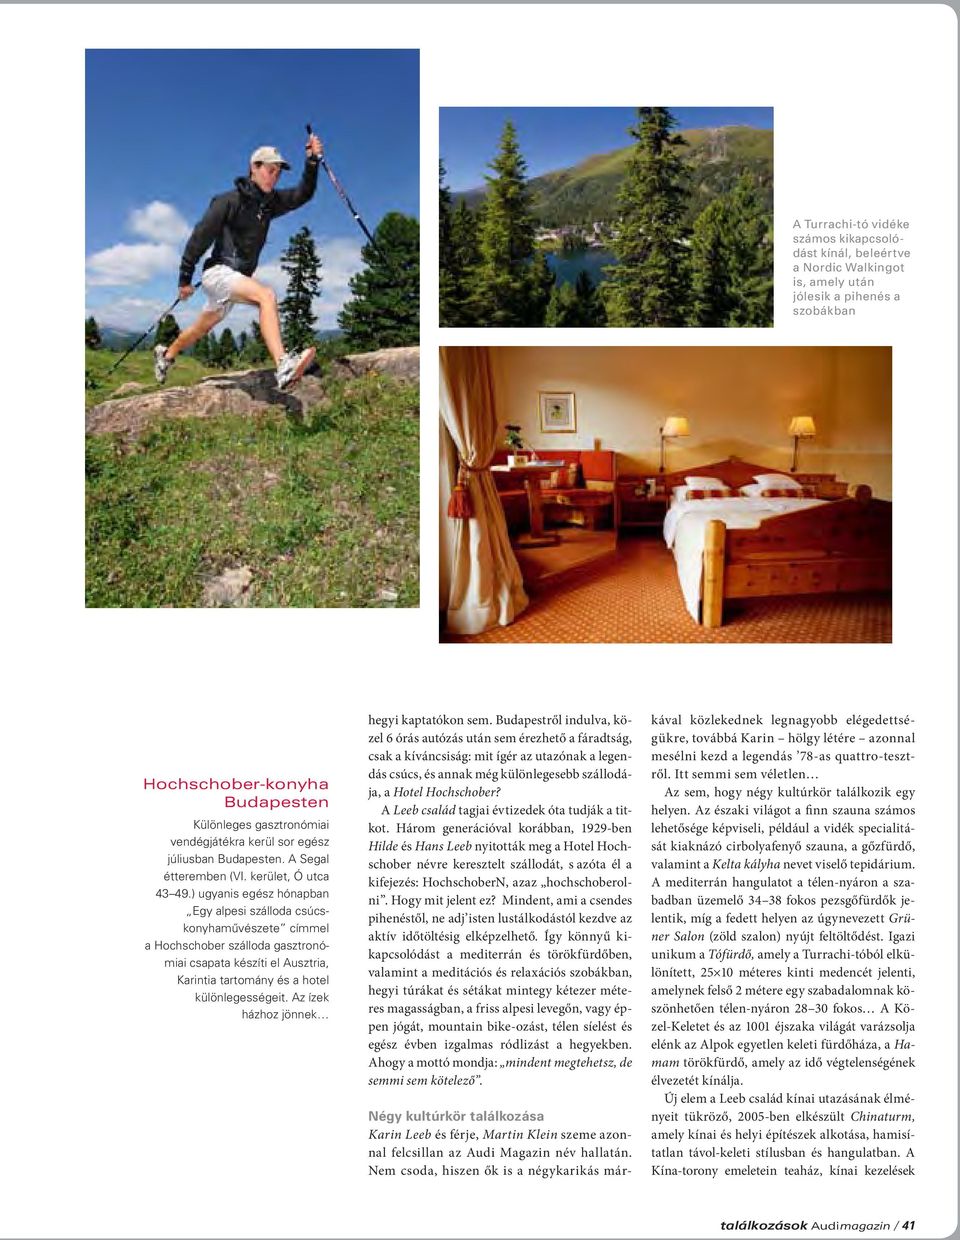 ) ugyanis egész hónapban Egy alpesi szálloda csúcskonyhaművészete címmel a Hochschober szálloda gasztronómiai csapata készíti el Ausztria, Karintia tartomány és a hotel különlegességeit.